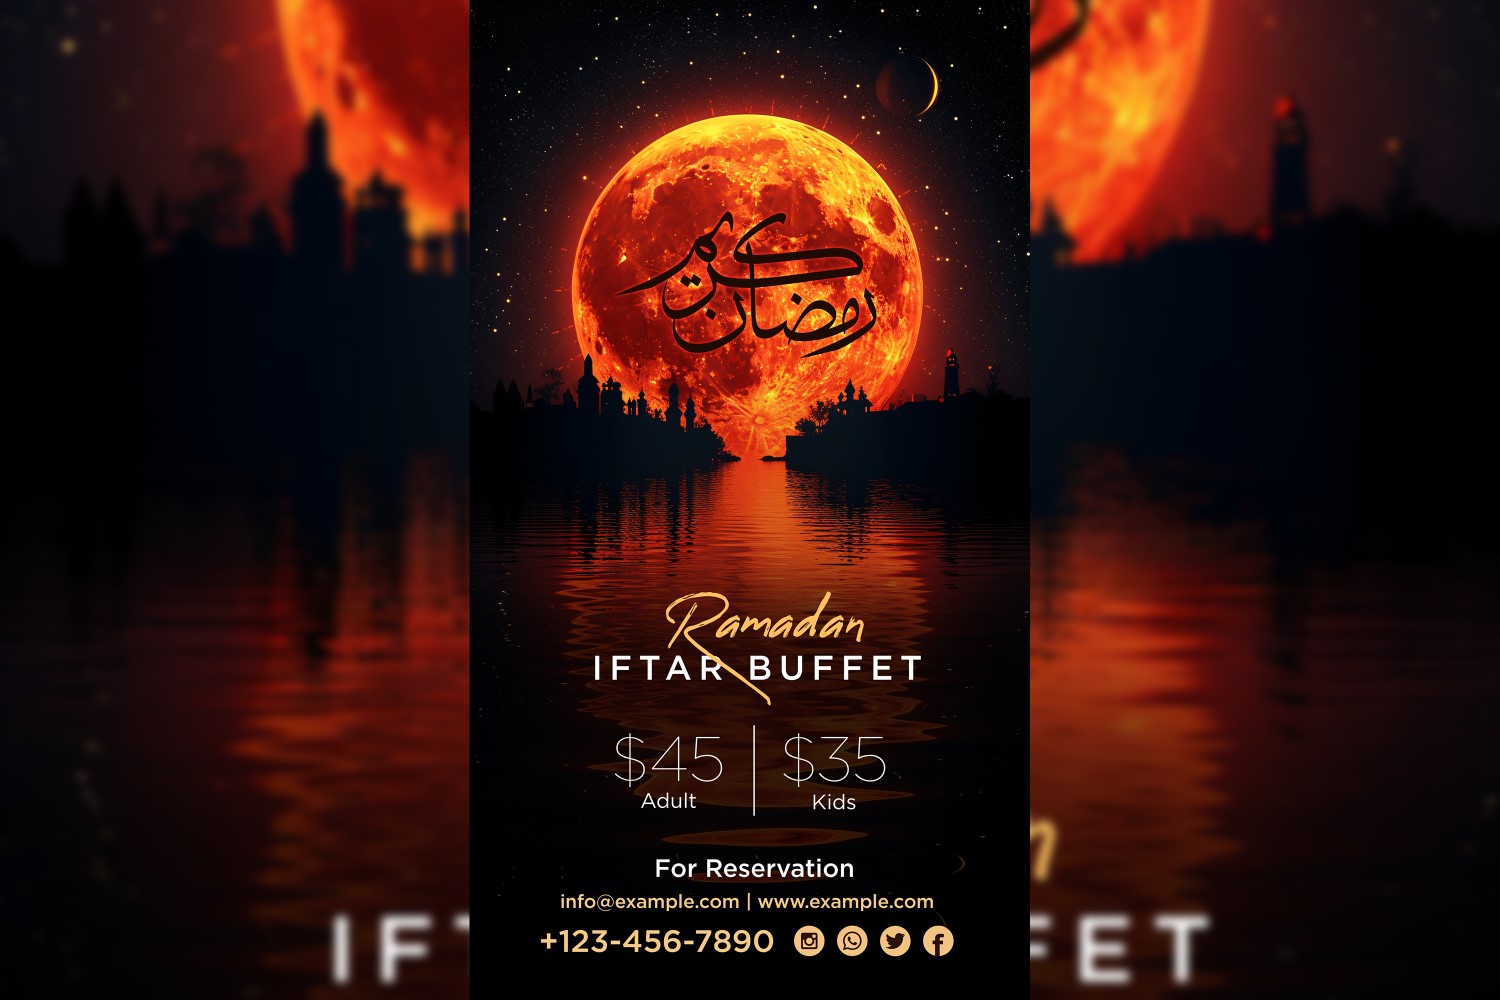 Ramadan Iftar Buffet Poster Design Template 02